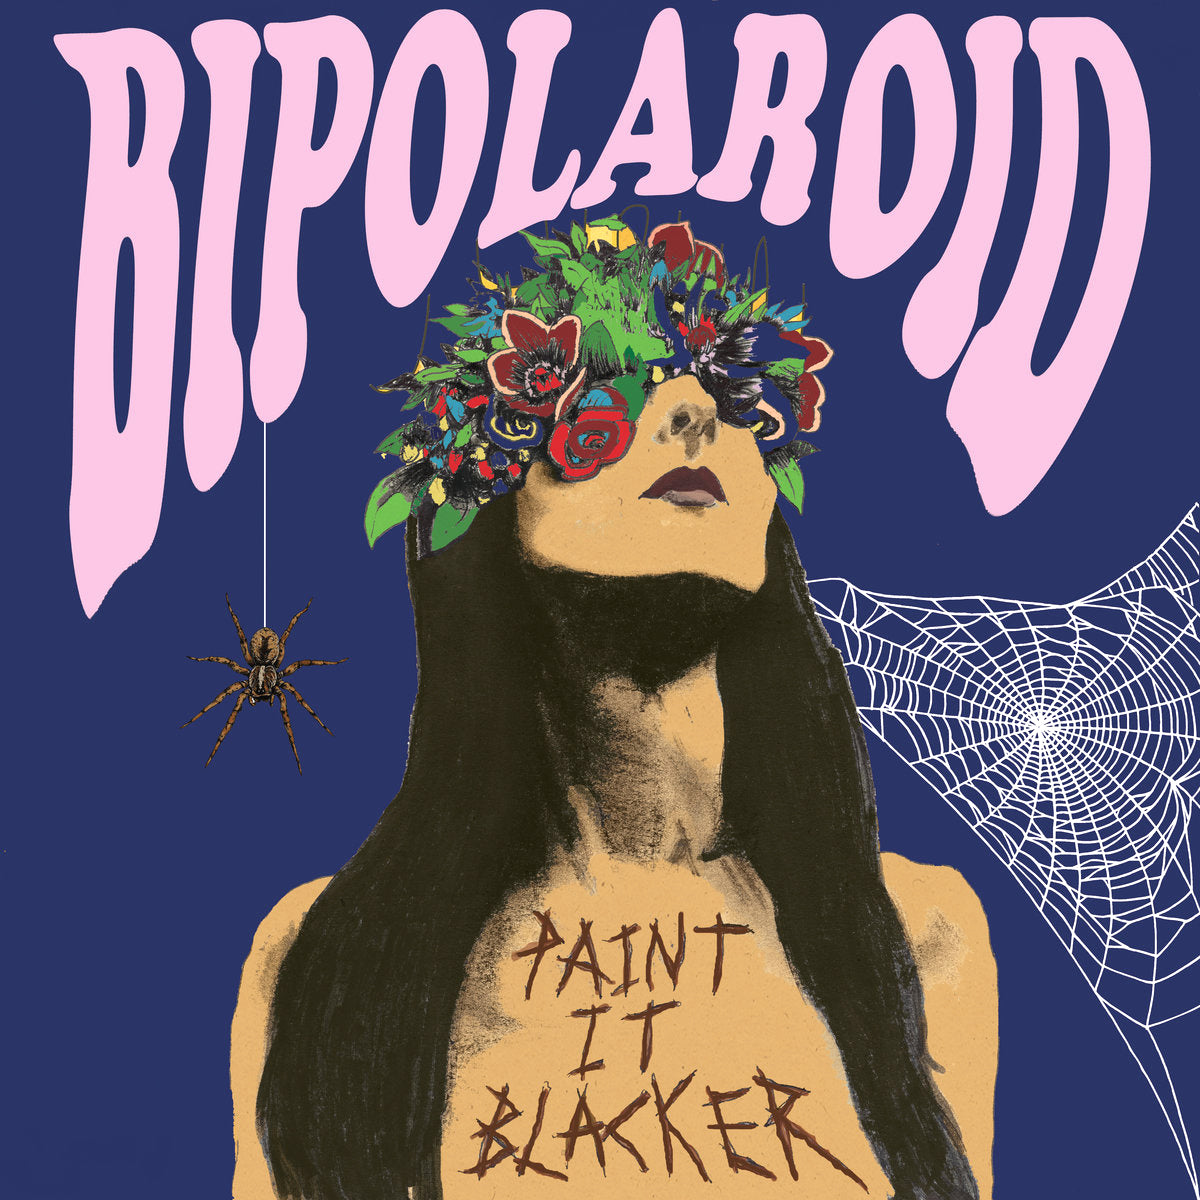 Bipolaroid- Paint It Blacker LP ~WARLOCKS!